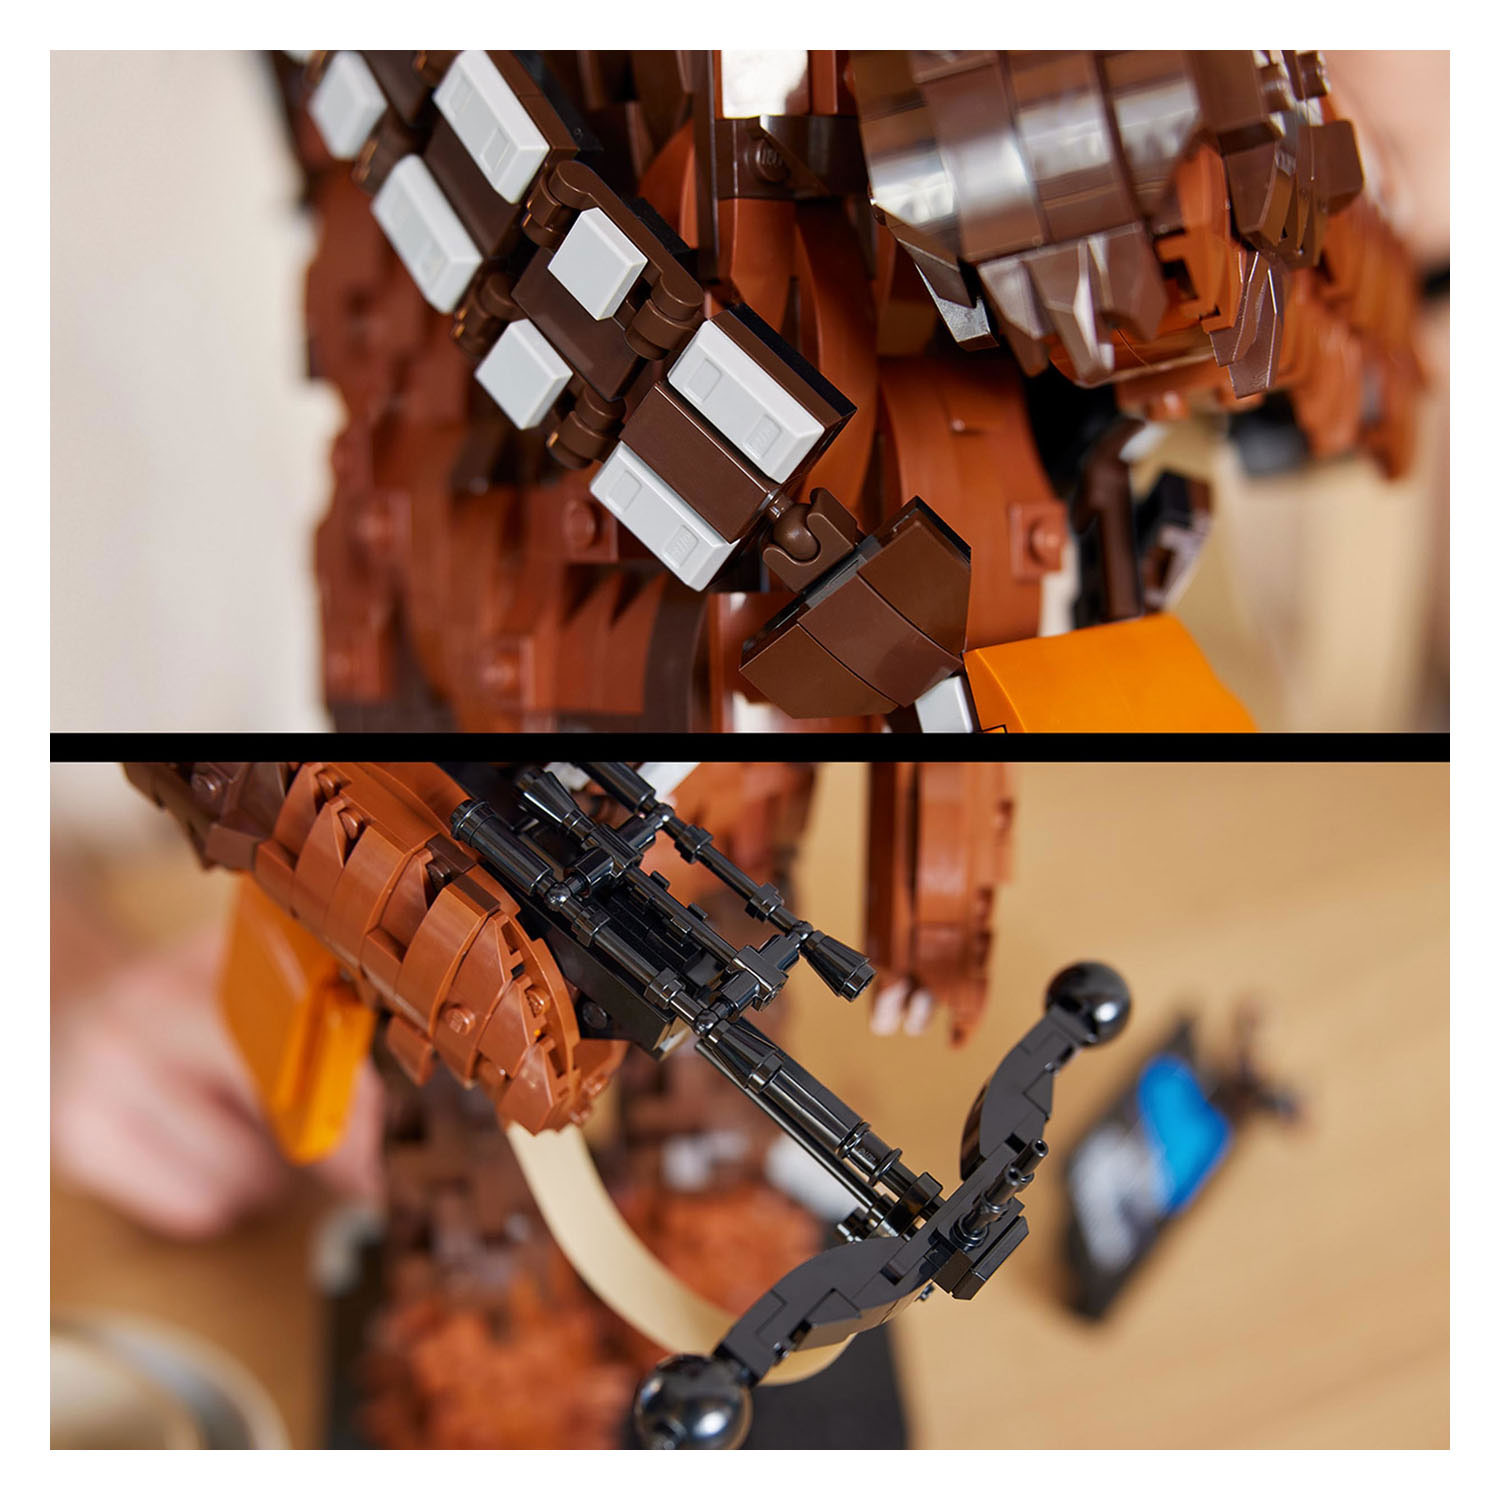 LEGO Star Wars 75371 Chewbacca Wookiee